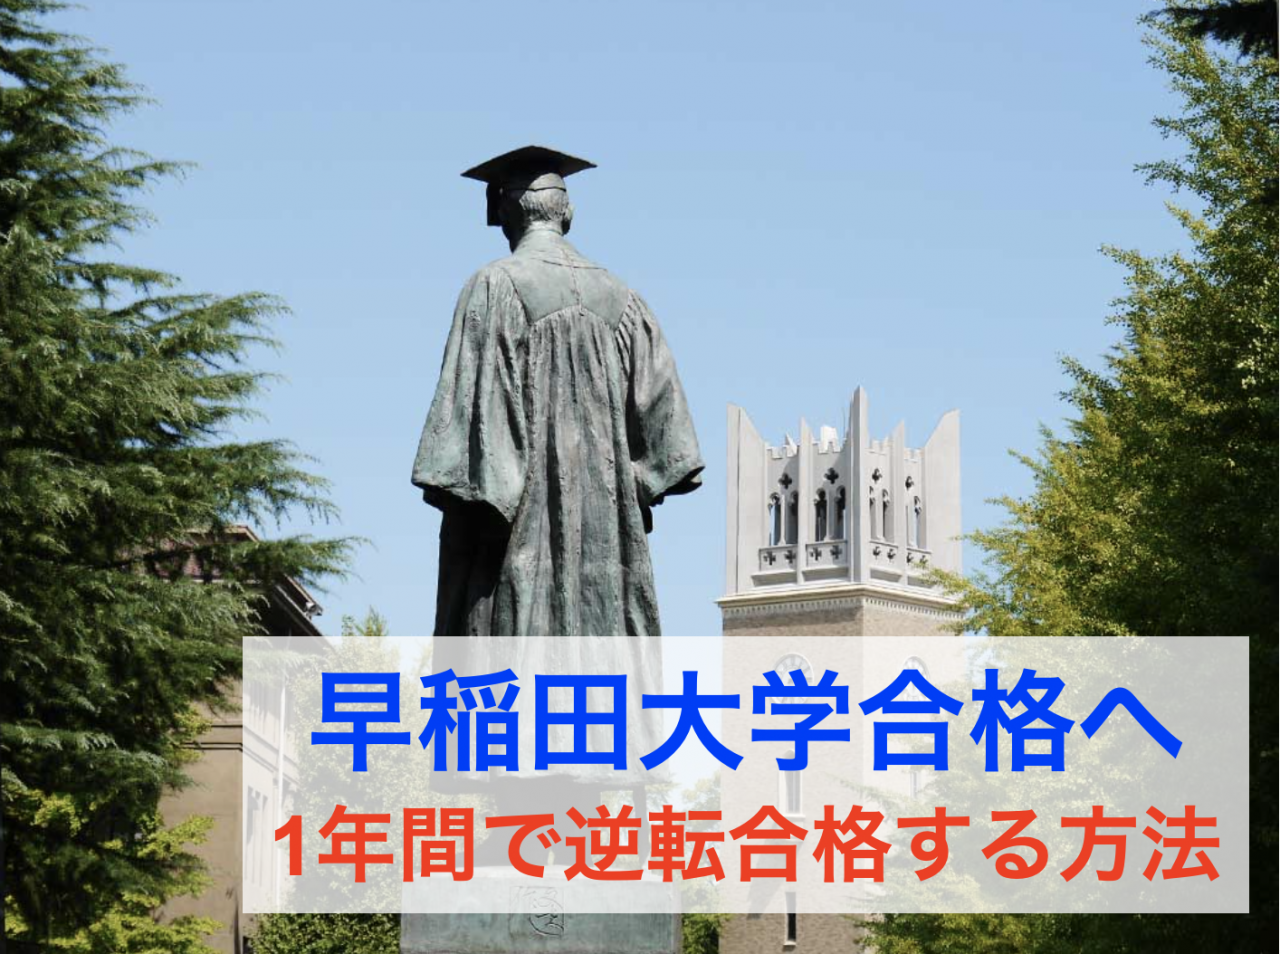 【早稲田大学合格へ】1年間で合格するための勉強法を季節別に具体的に解説